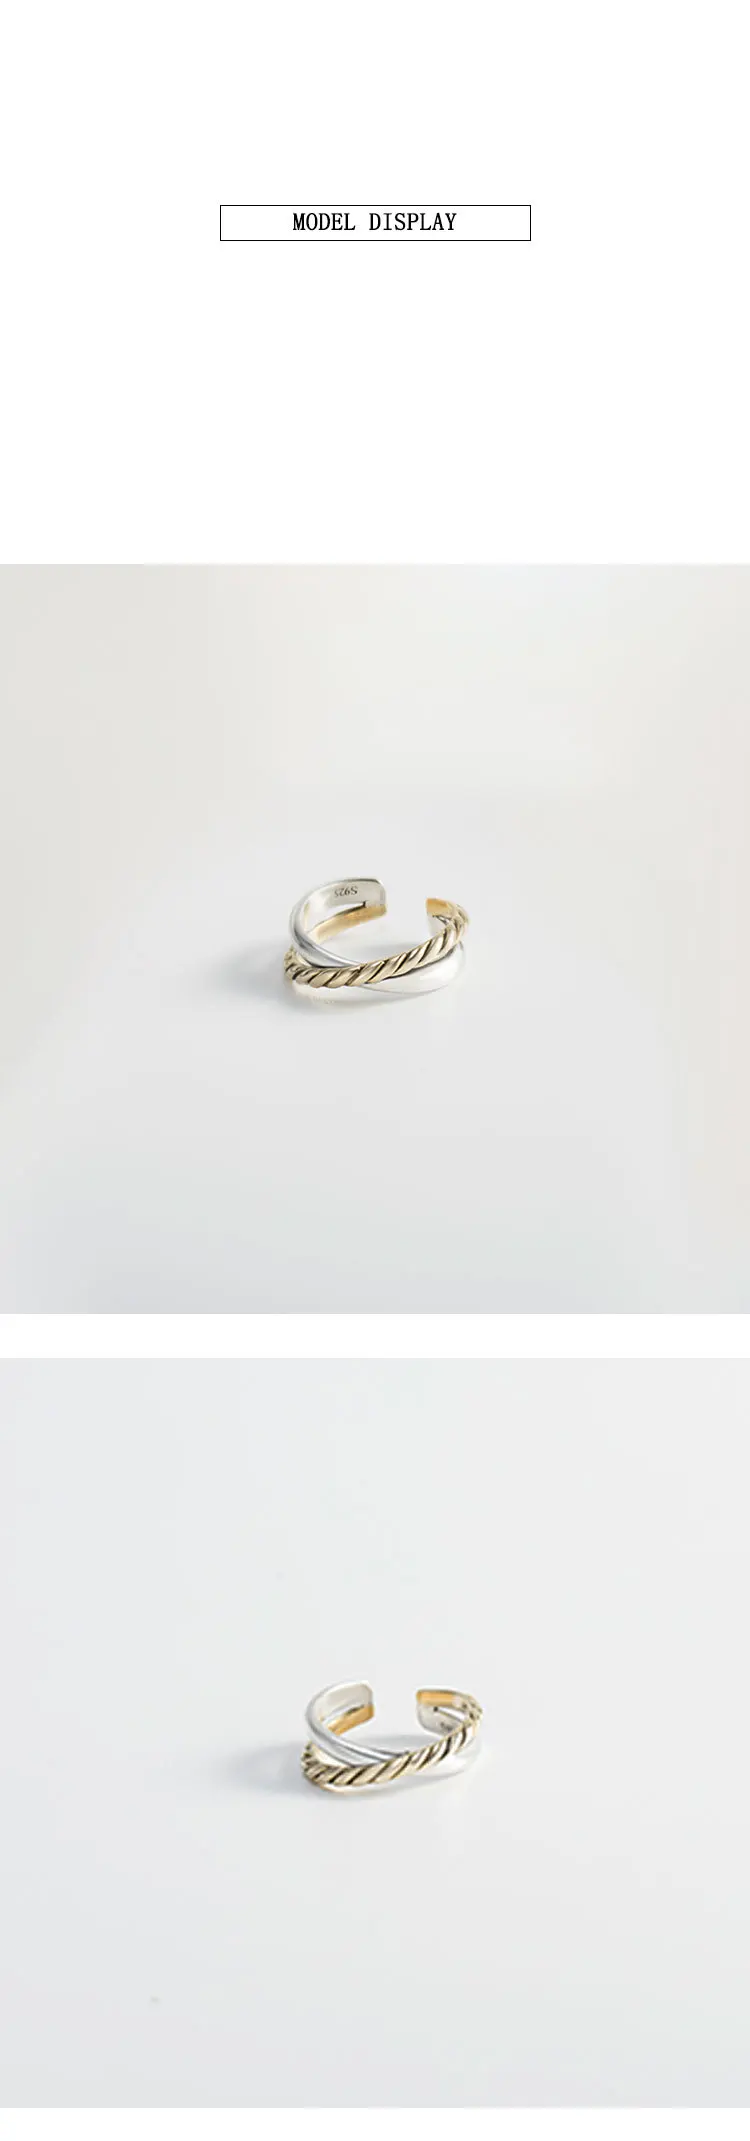 Шанис натуральная 925 пробы серебро Твист Gold& Silver Cross открытые Регулируемые кольца для Для женщин подарок